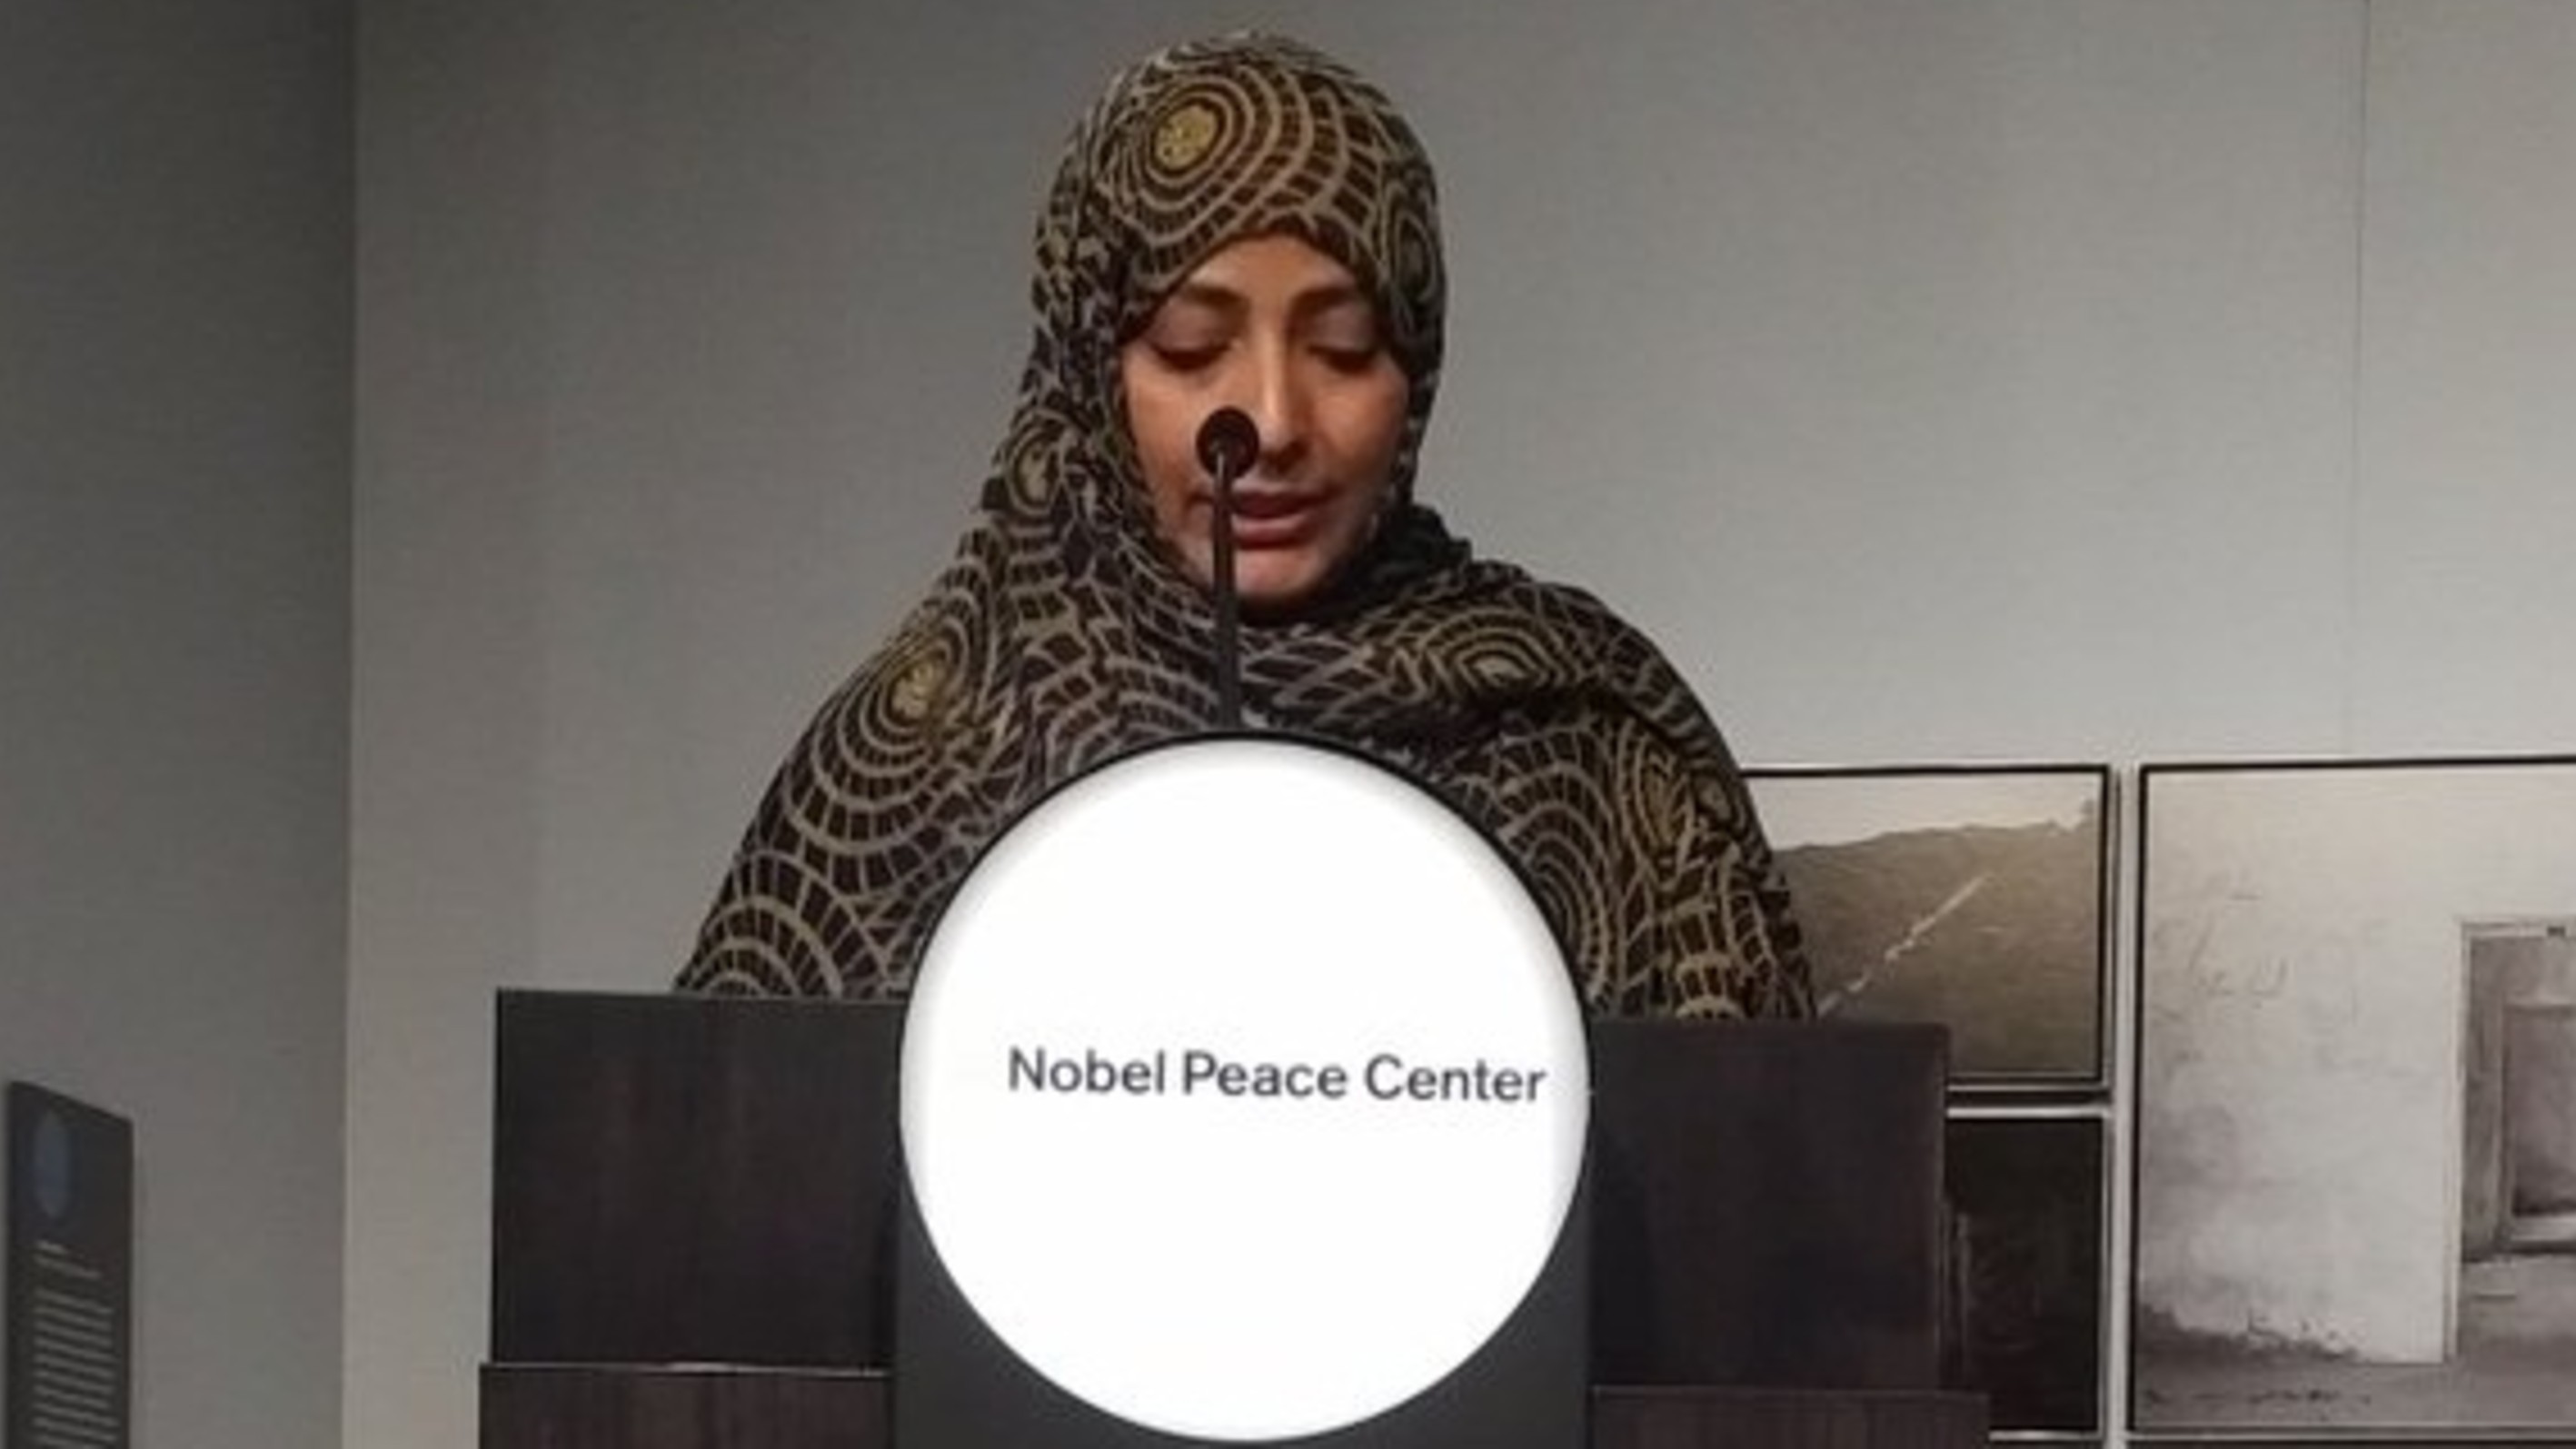 كلمة الناشطة الحائزة على جائزة نوبل للسلام توكل كرمان في مركز نوبل للسلام بعنوان "ماذا يعني أن تكون حائزا على نوبل" - النرويج